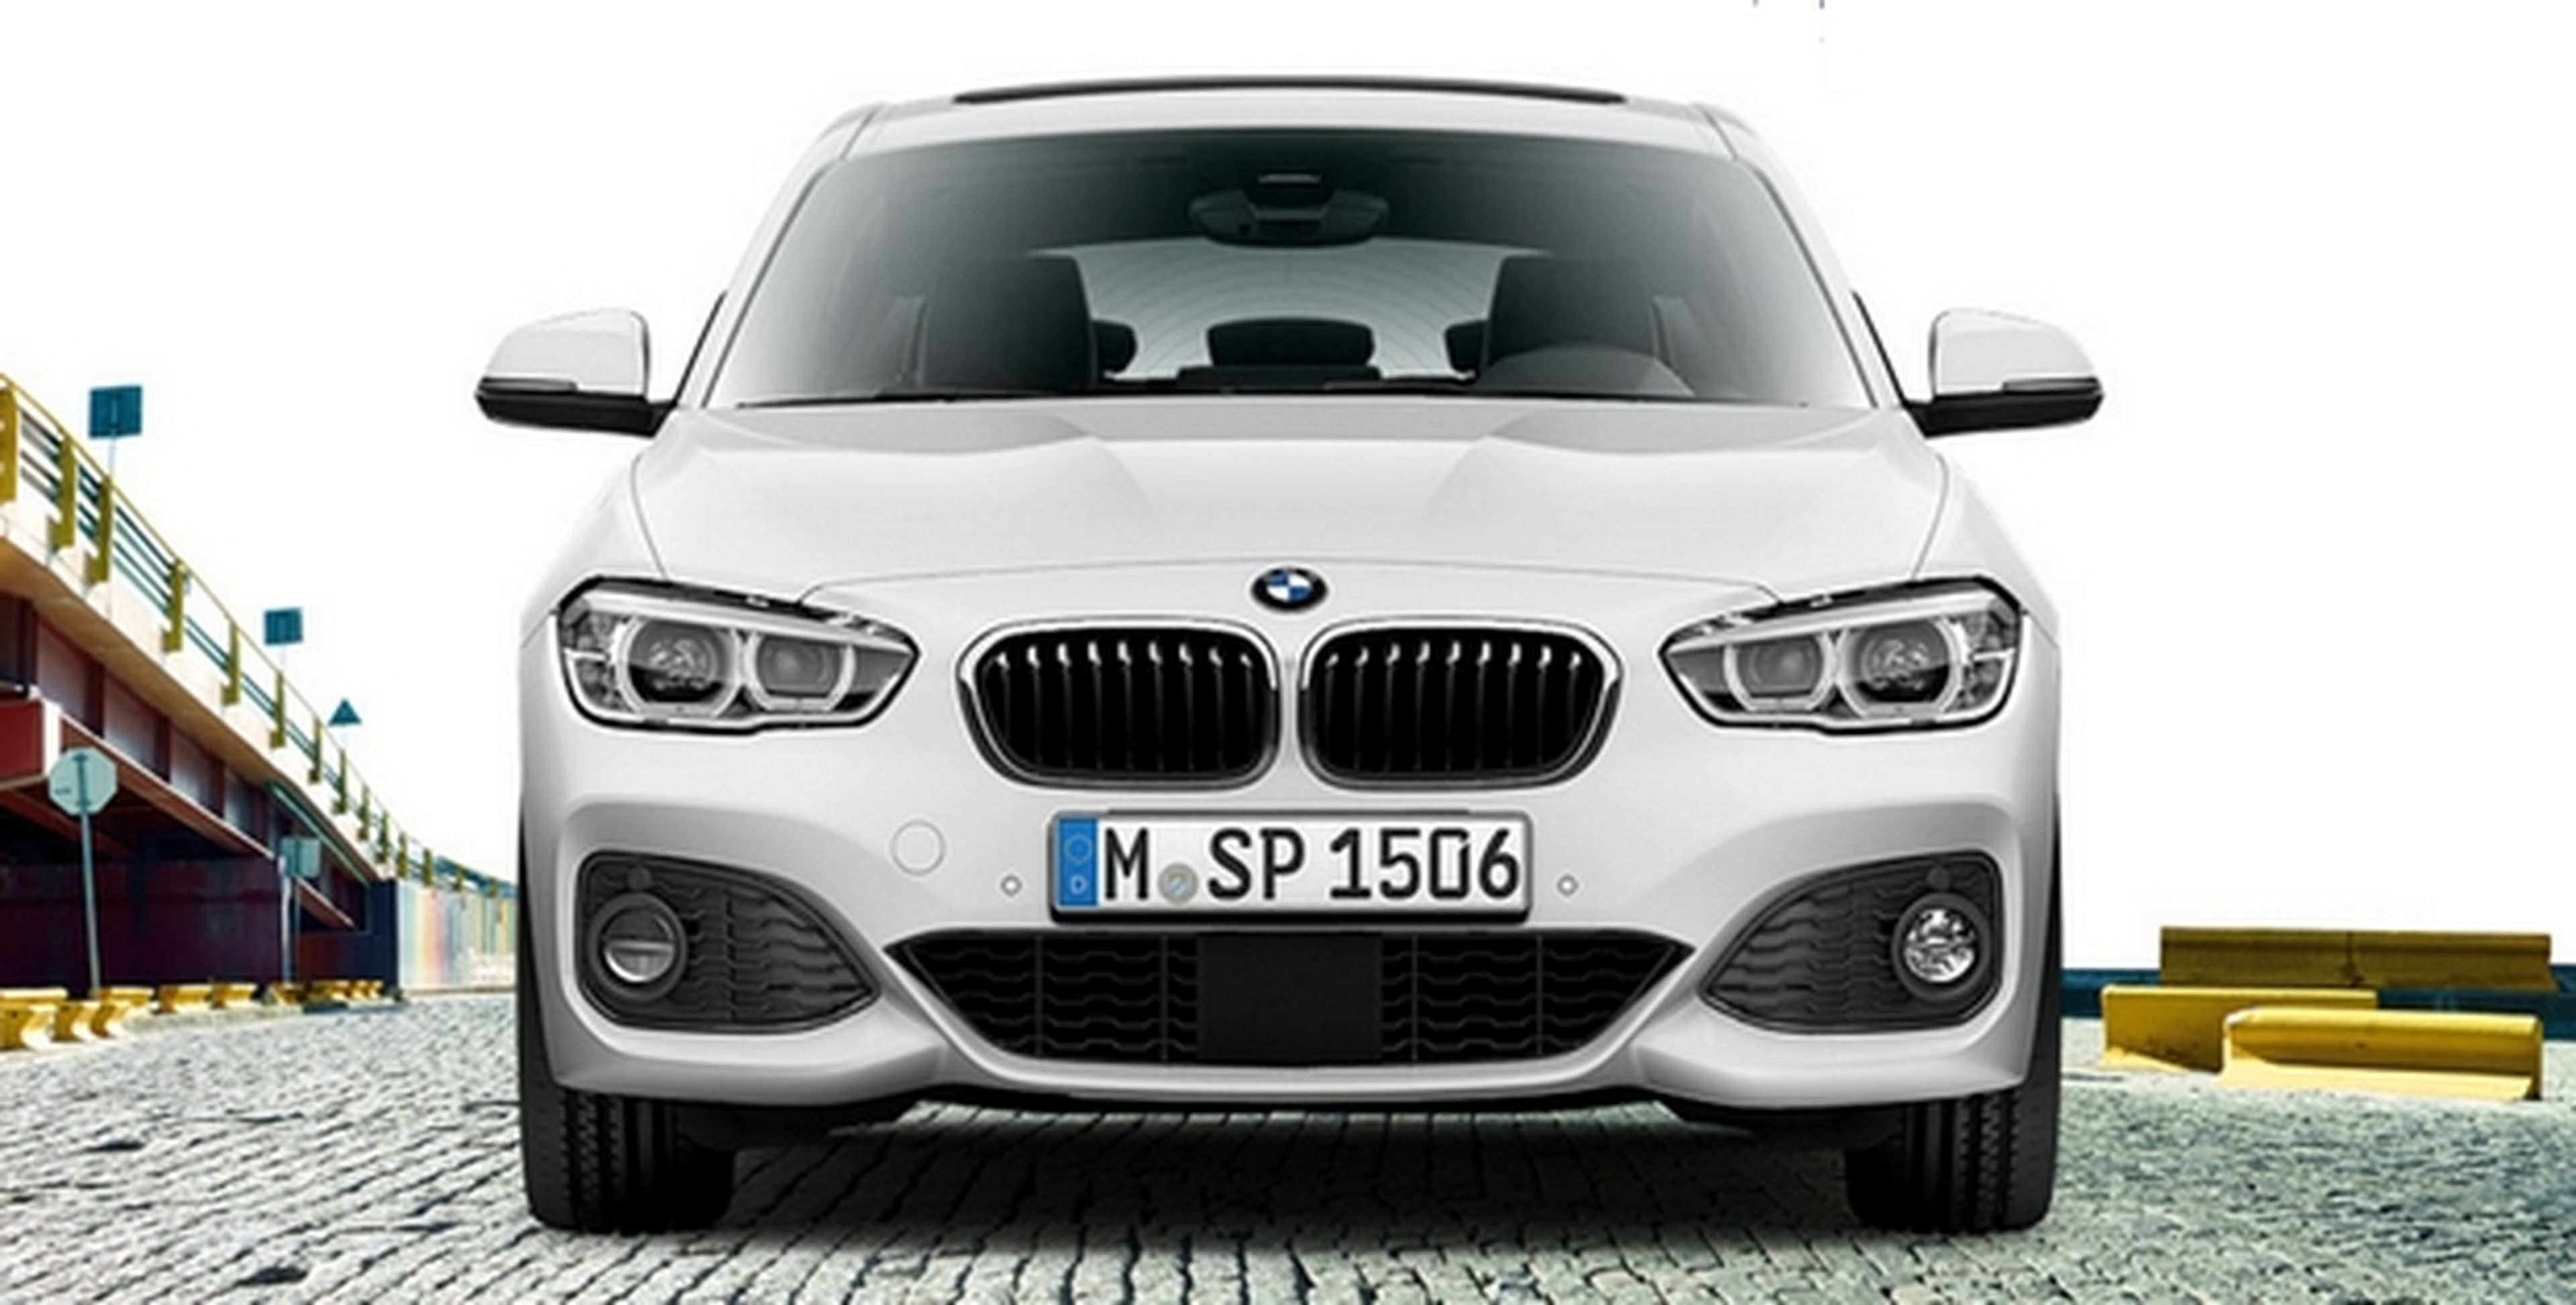 Prueba gratis el nuevo BMW Serie 1, el compacto más deportivo y ecológico